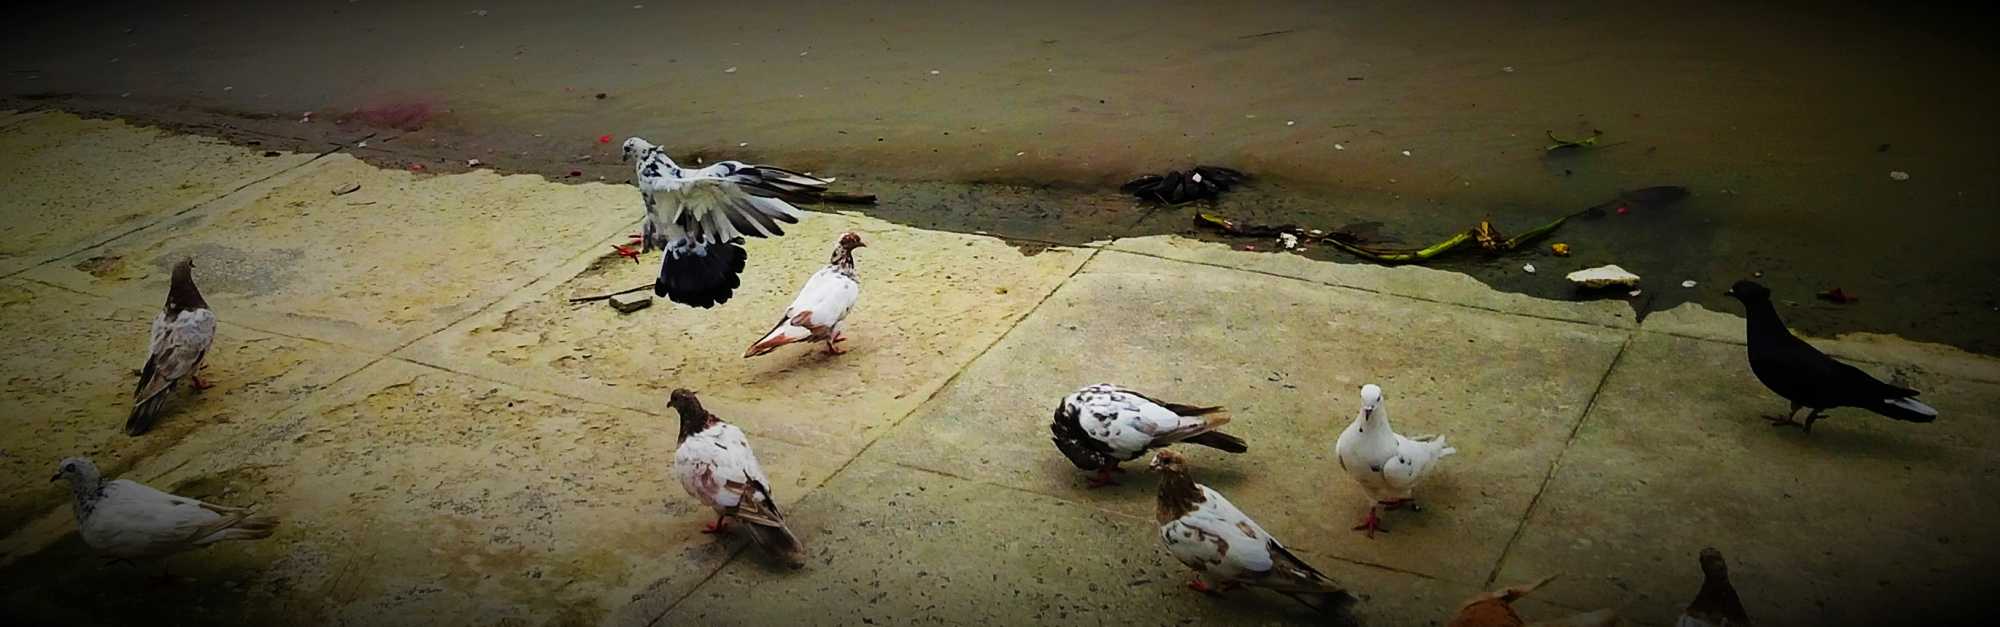 Pigeons-1